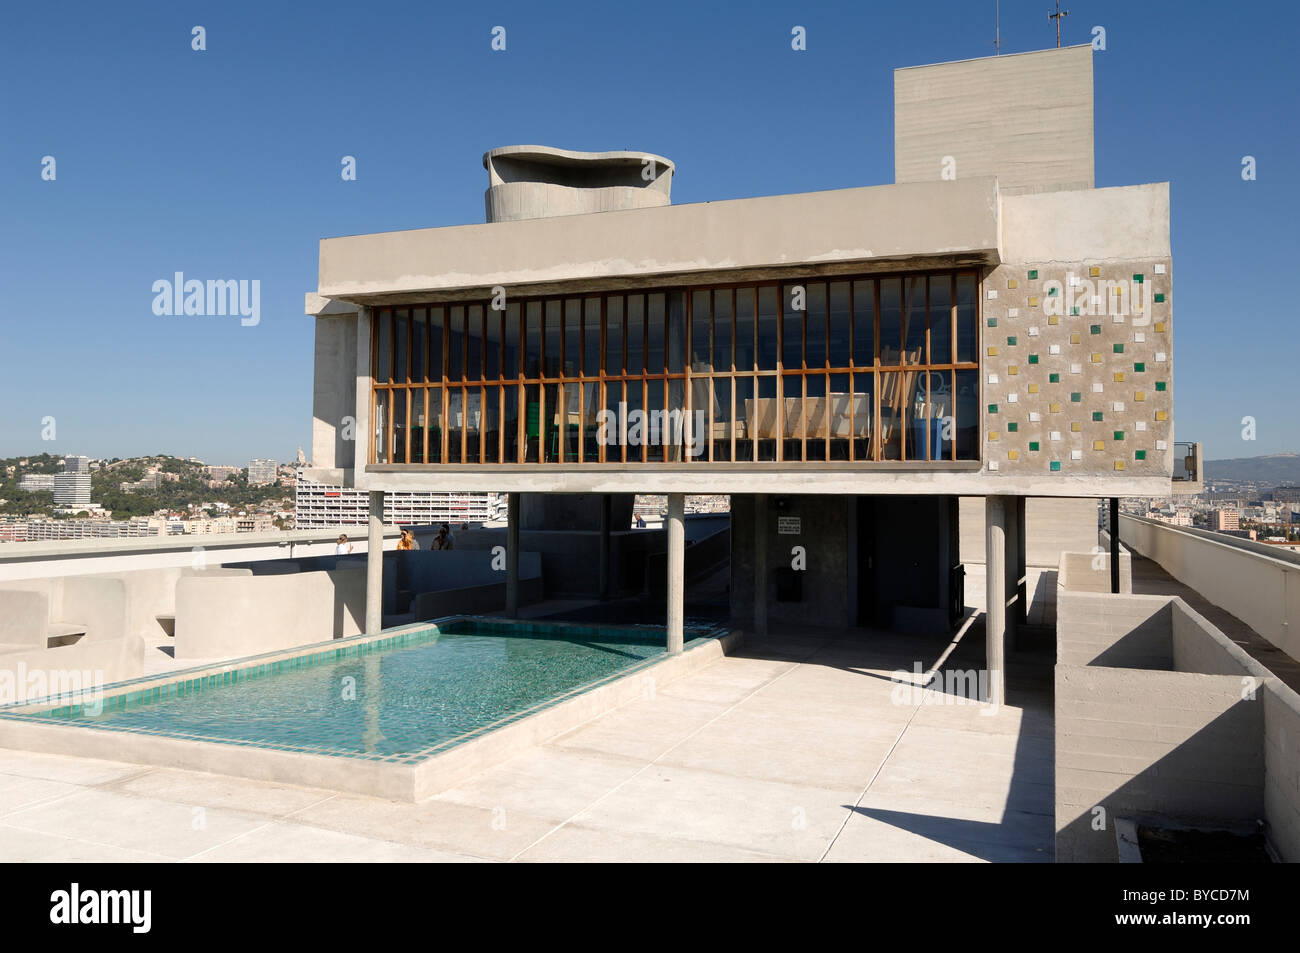 Terrasse sur le toit et piscine de la Cité radieuse ou unité d'habitation immeuble d'appartements par le Corbusier, Marseille Provence France Banque D'Images